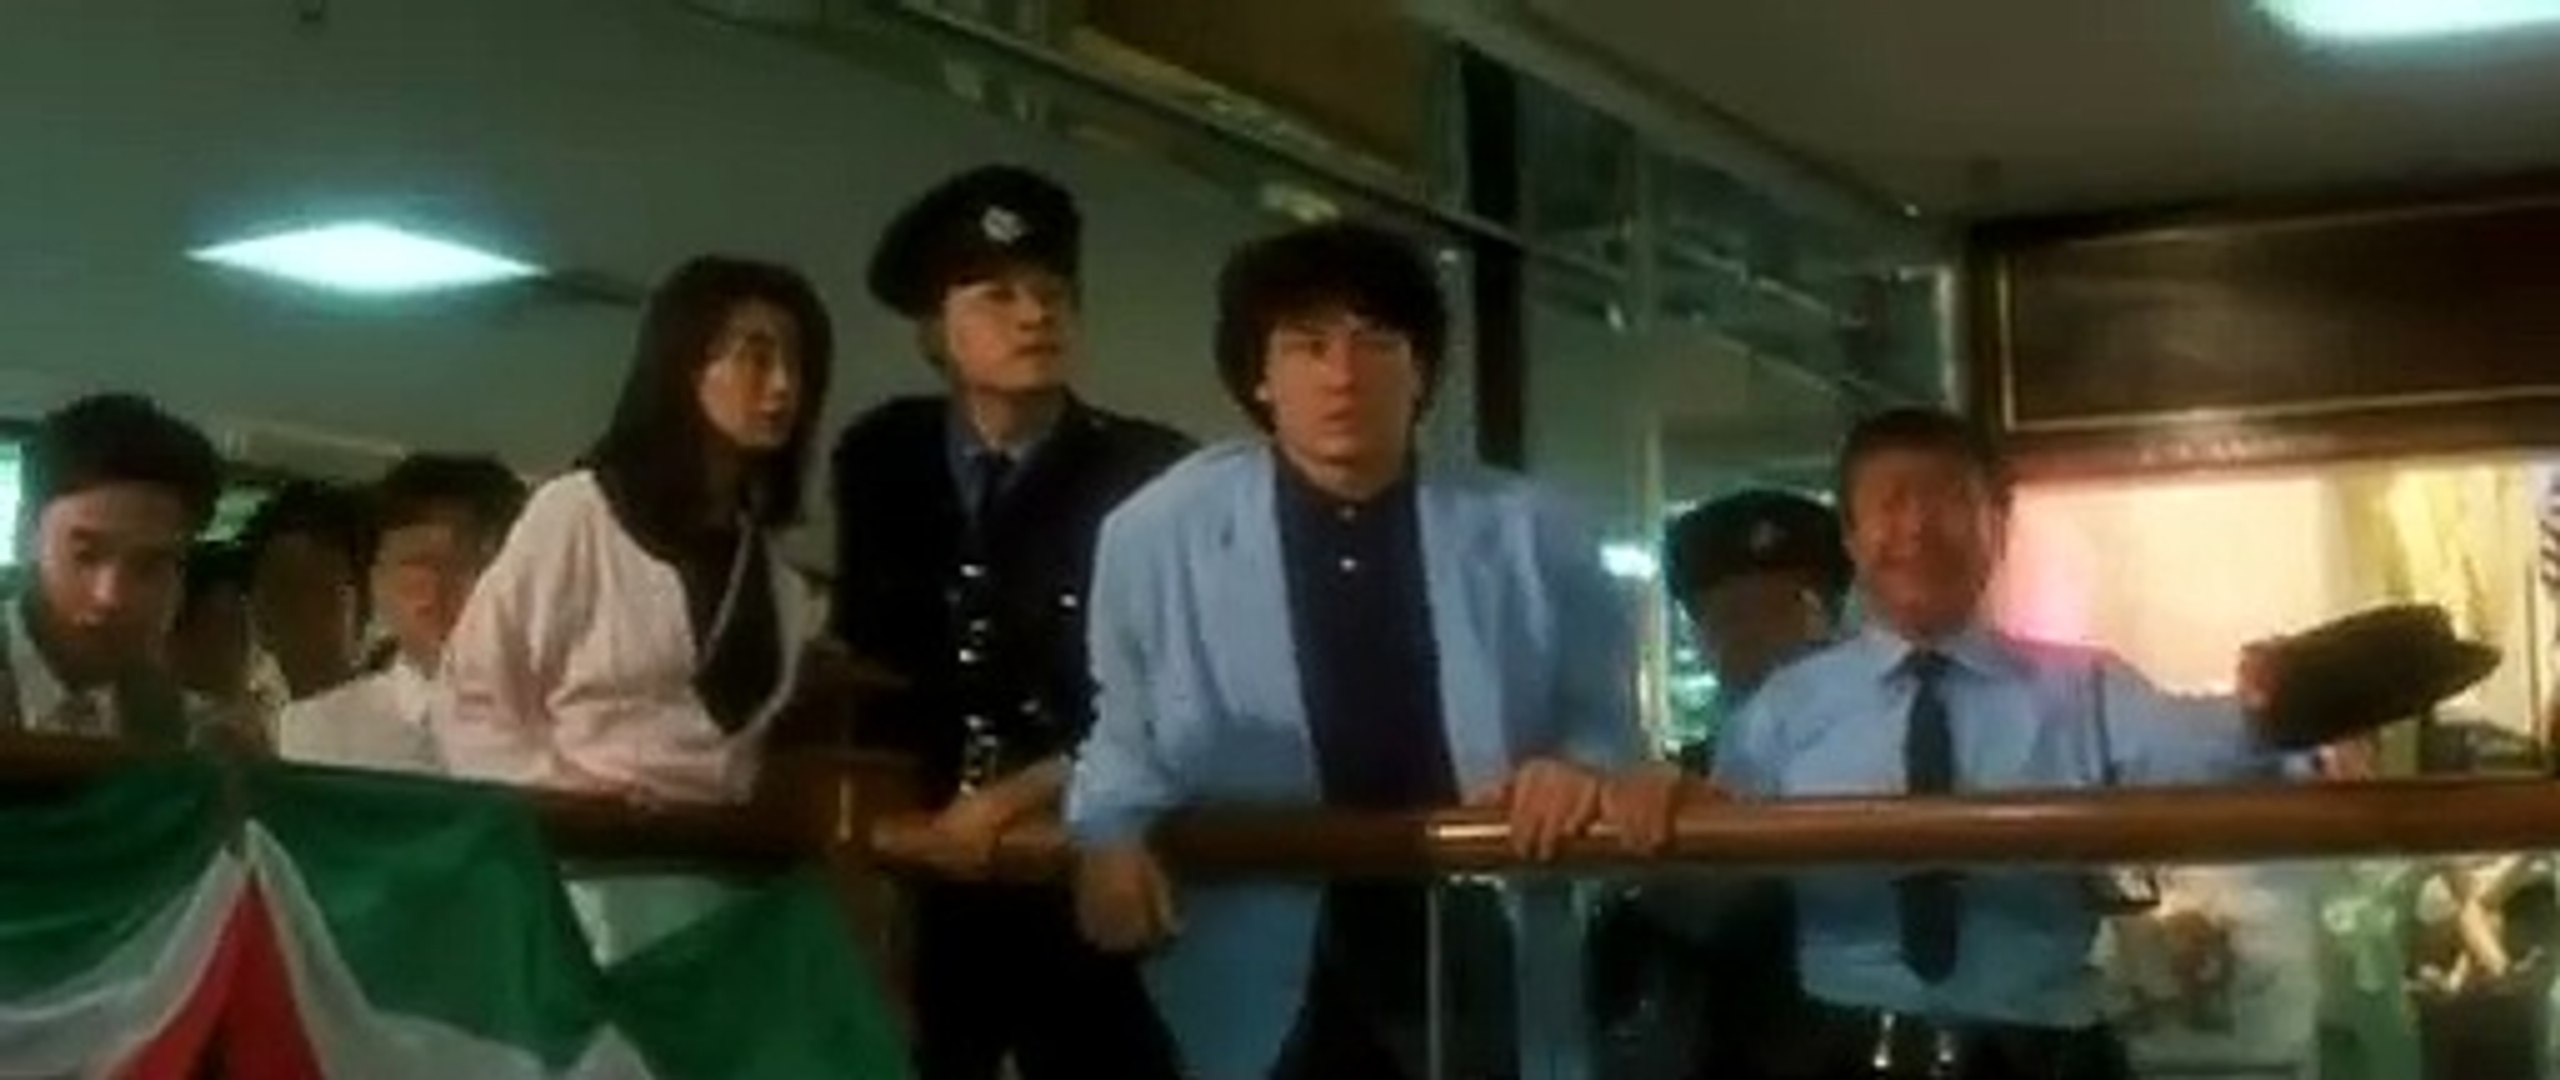 Em Busca de Justiça - Filme Completo Dublado - Jackie Chan